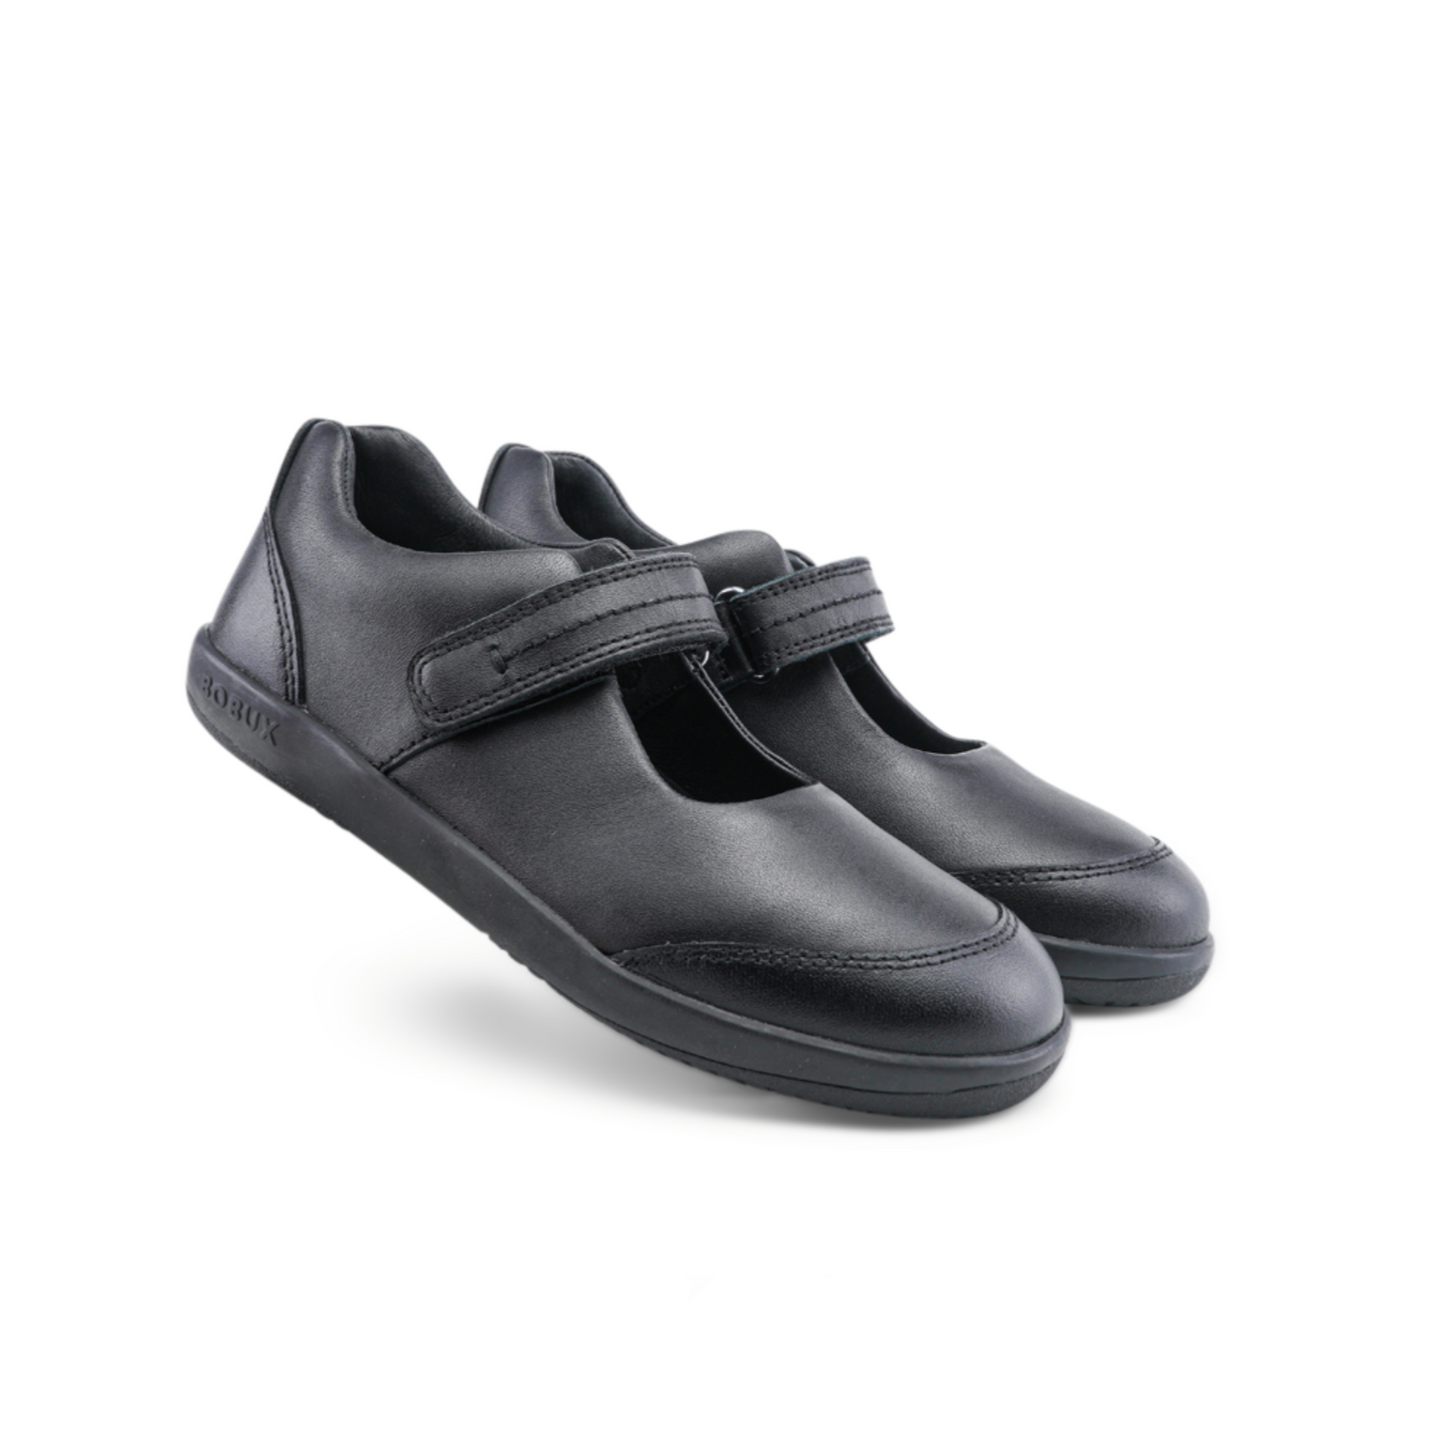 Bobux Quest Black Leather School Shoes